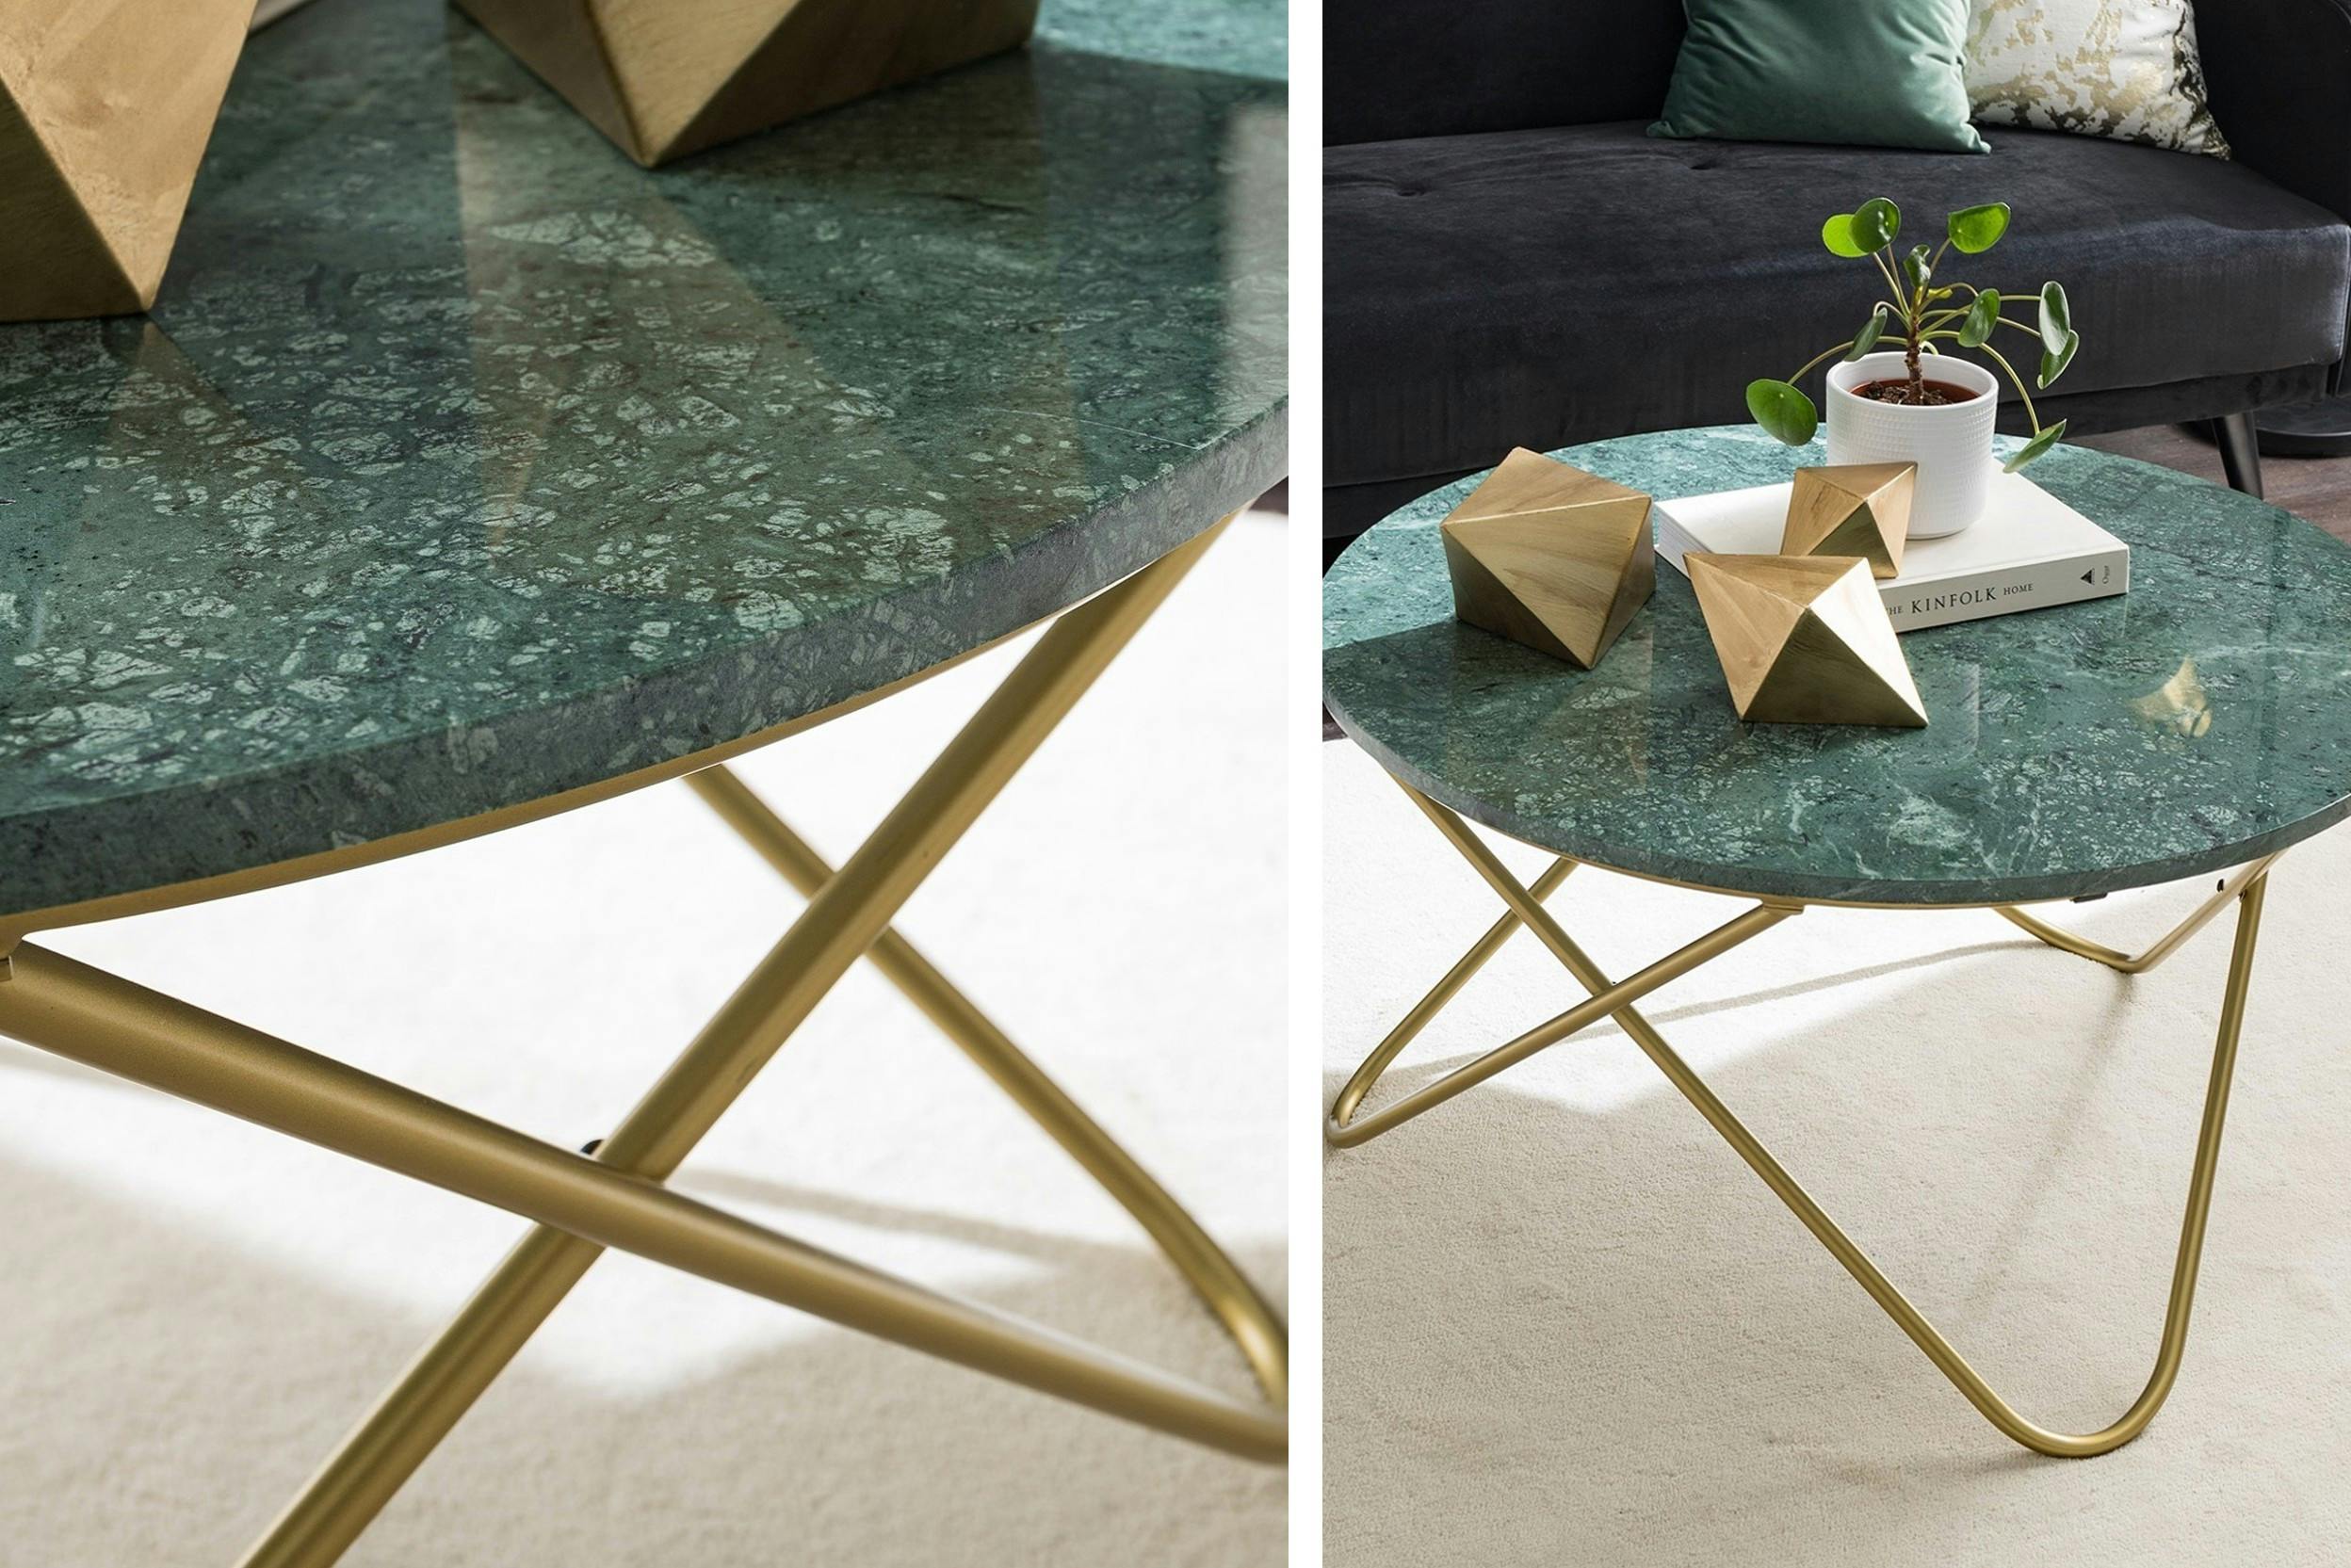 Tavolino con gambe a forcina (hairpin legs) dorate e piano in marmo verde, per uno stile glamour, in tutta semplicità